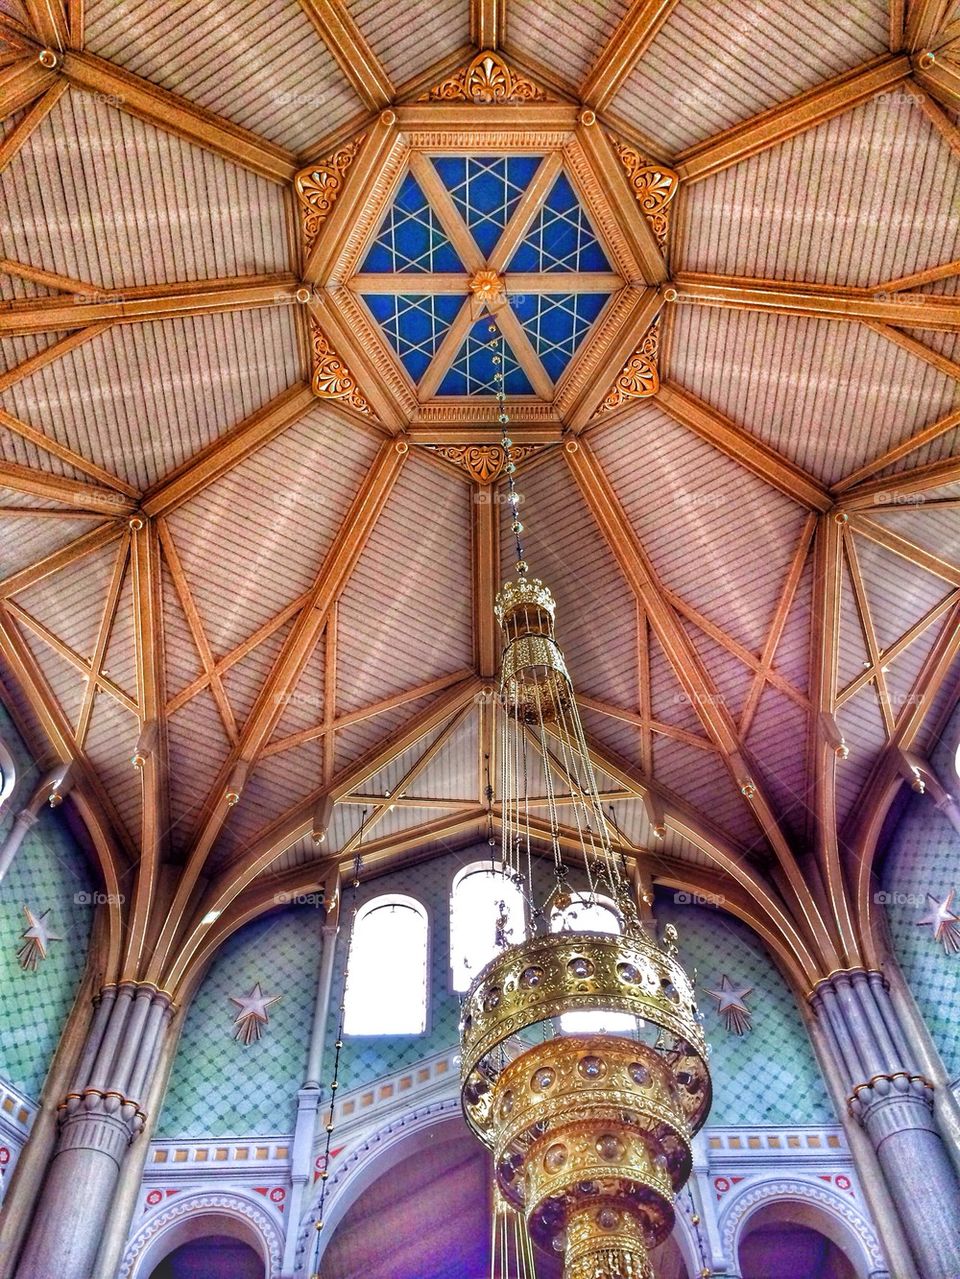 Church ceiling